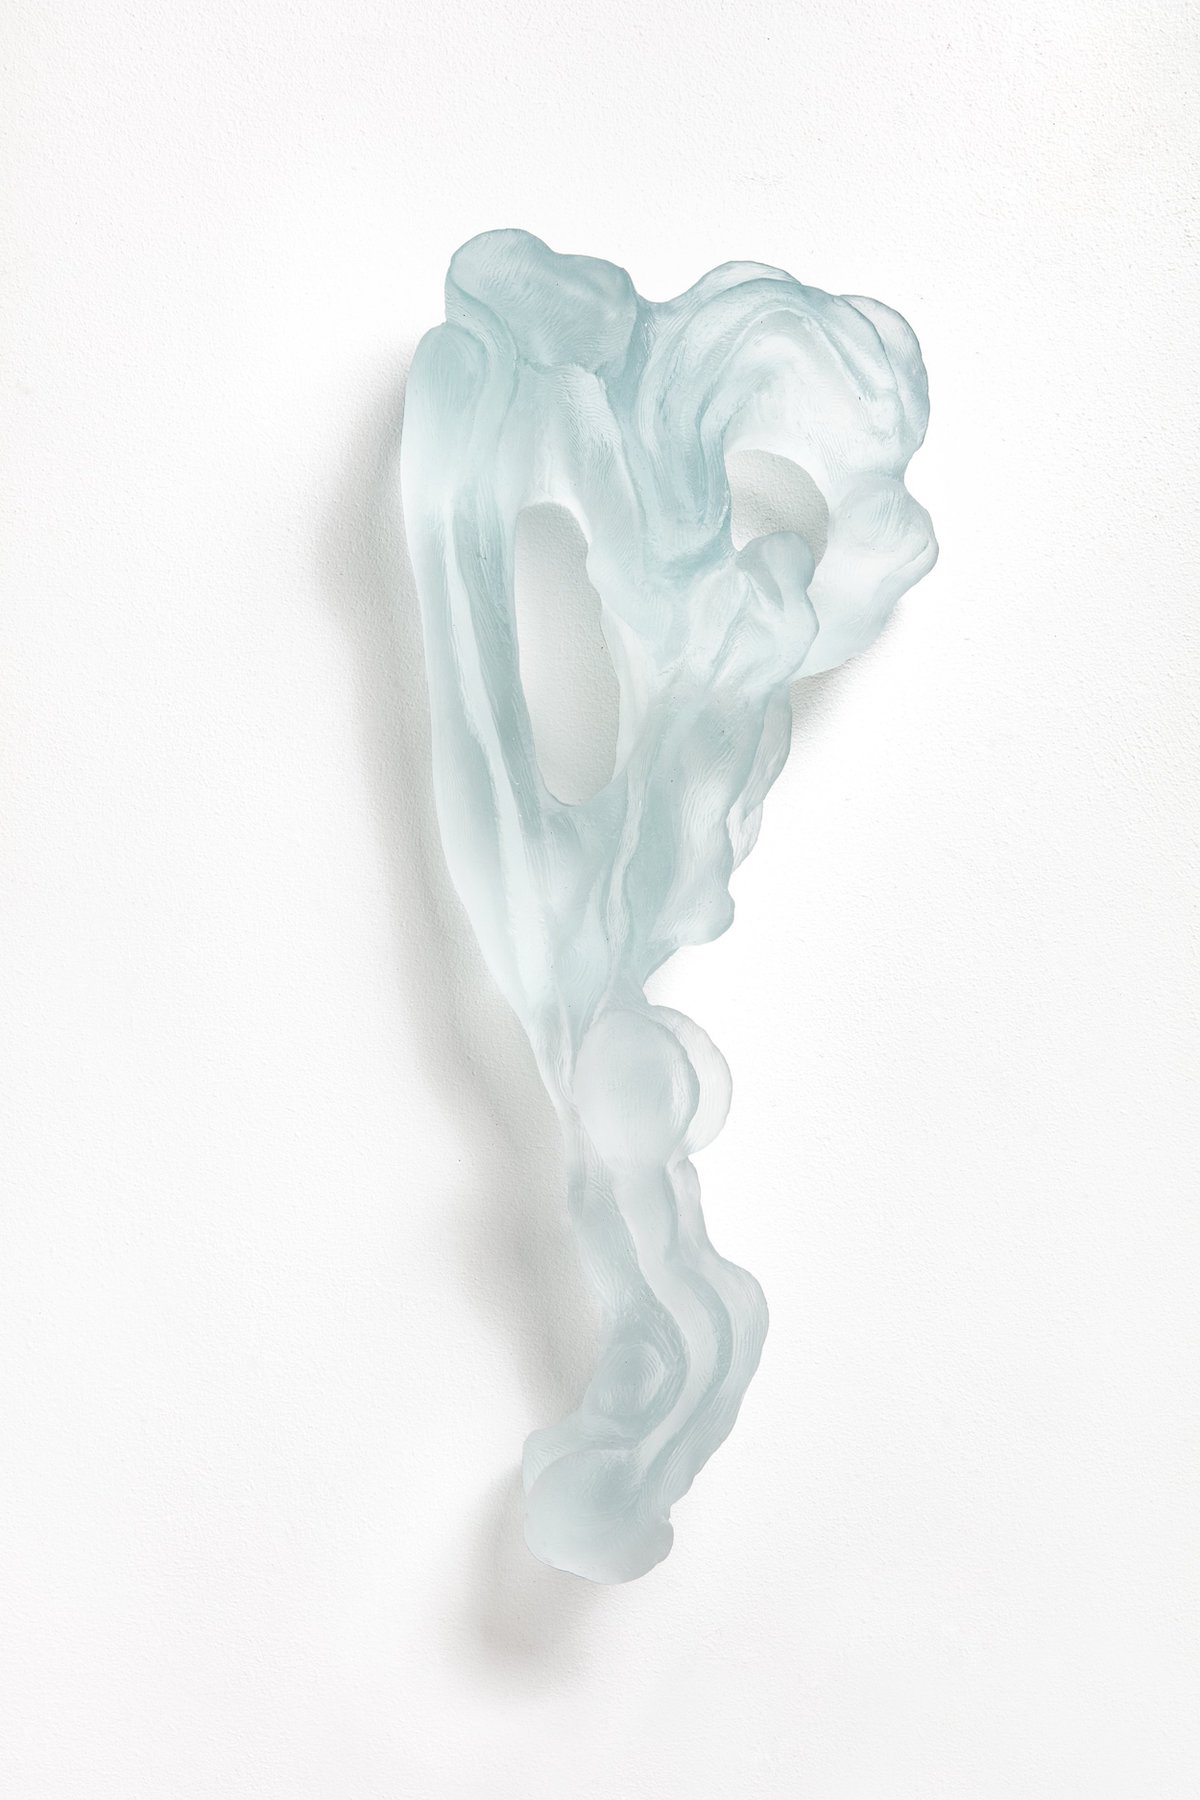 Glass Sculpture by Lene Bodker 10